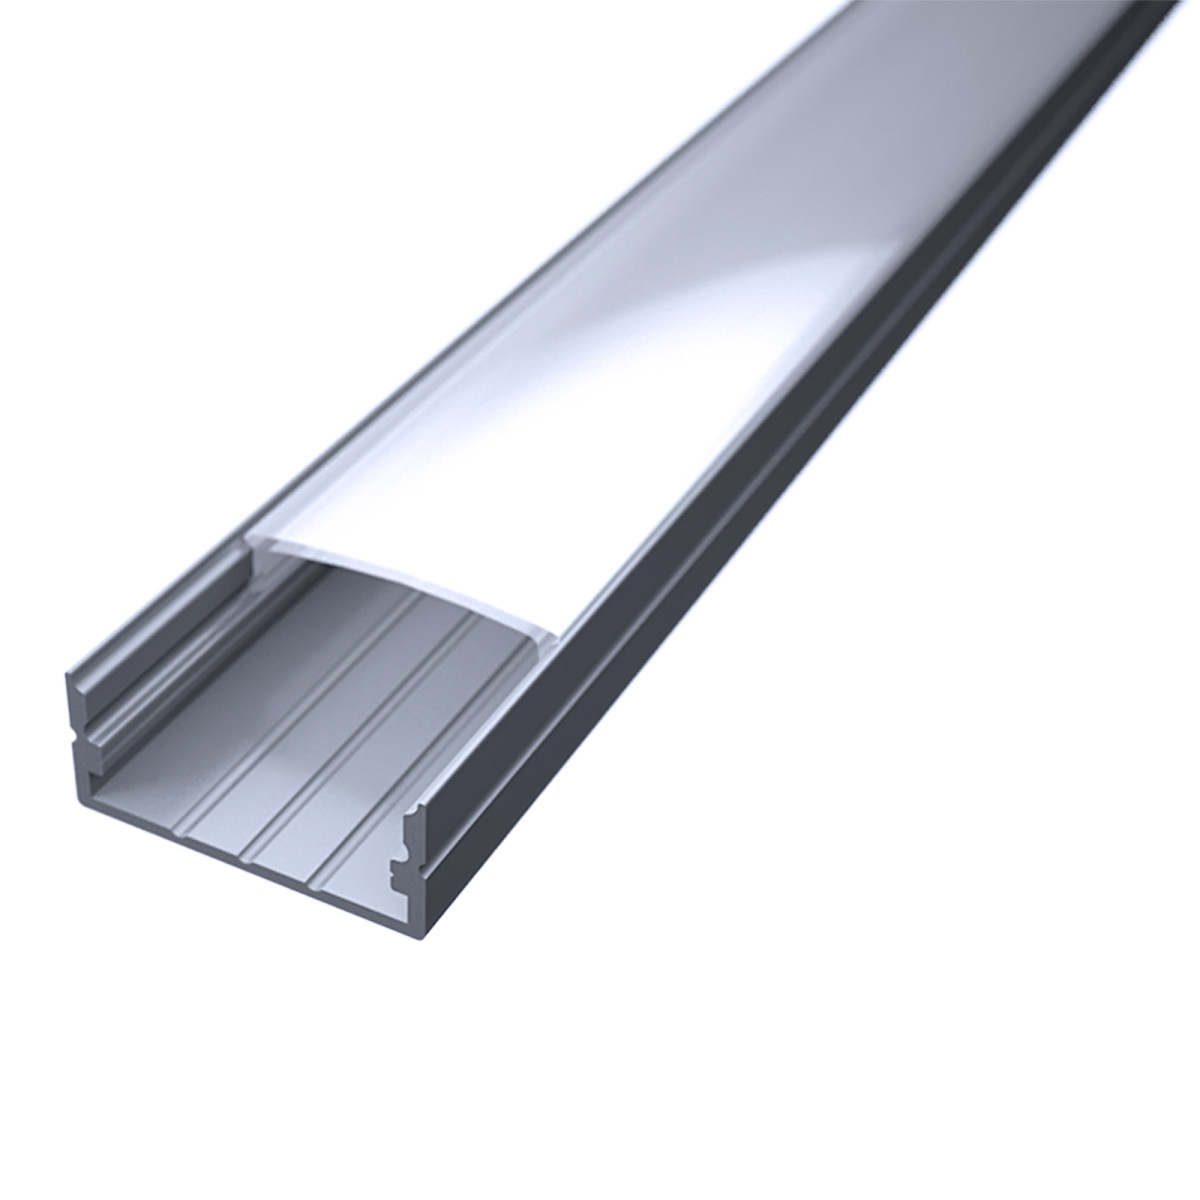 LED Flachprofil "Slim-Line max" | Abdeckung diffus | Zuschnitt auf 76cm |